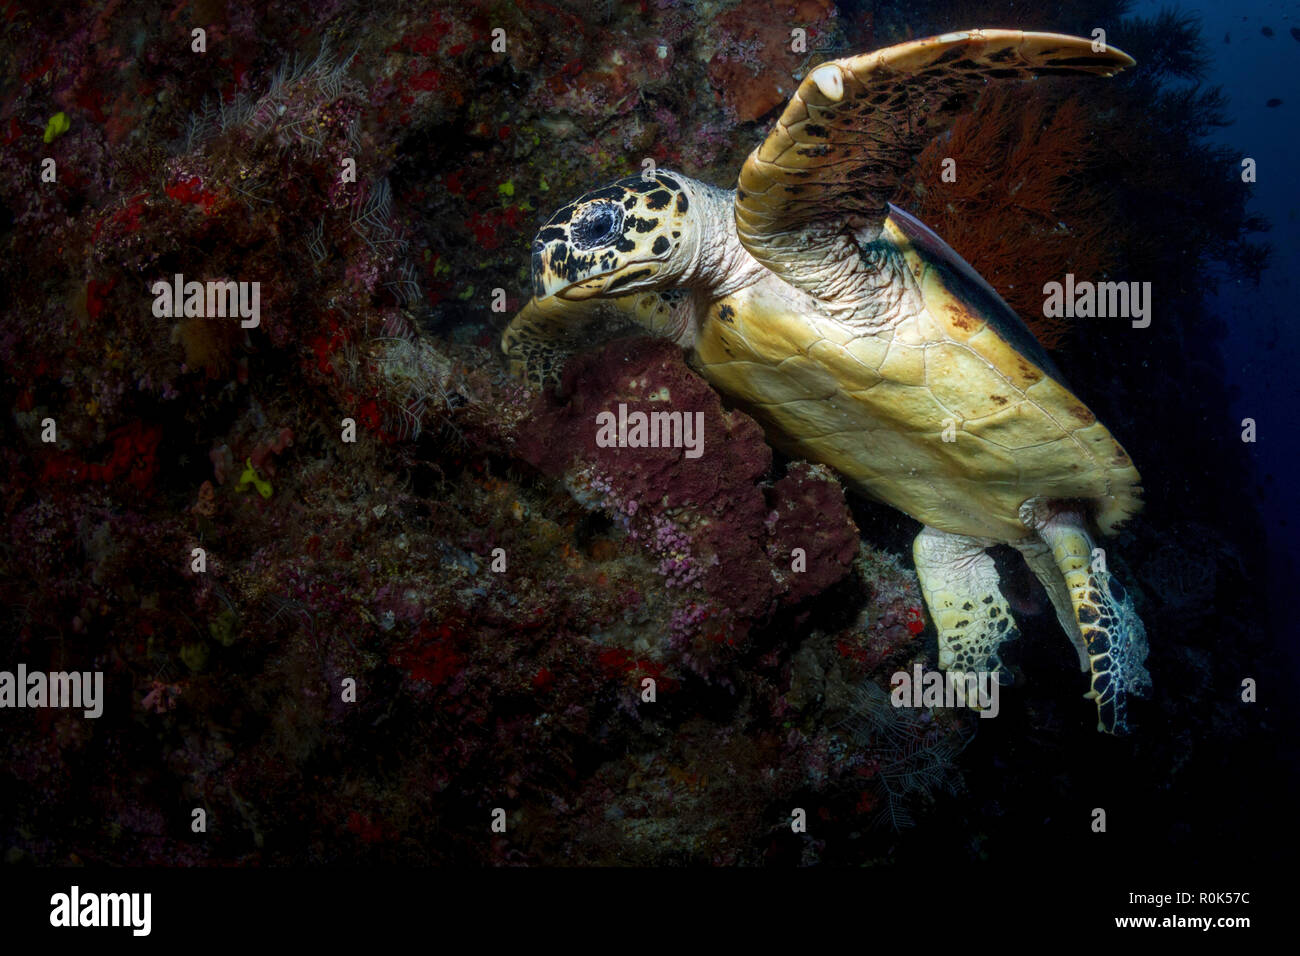 Hawksbill sea turtle in the waters of Sipadan, Malaysia. Stock Photo